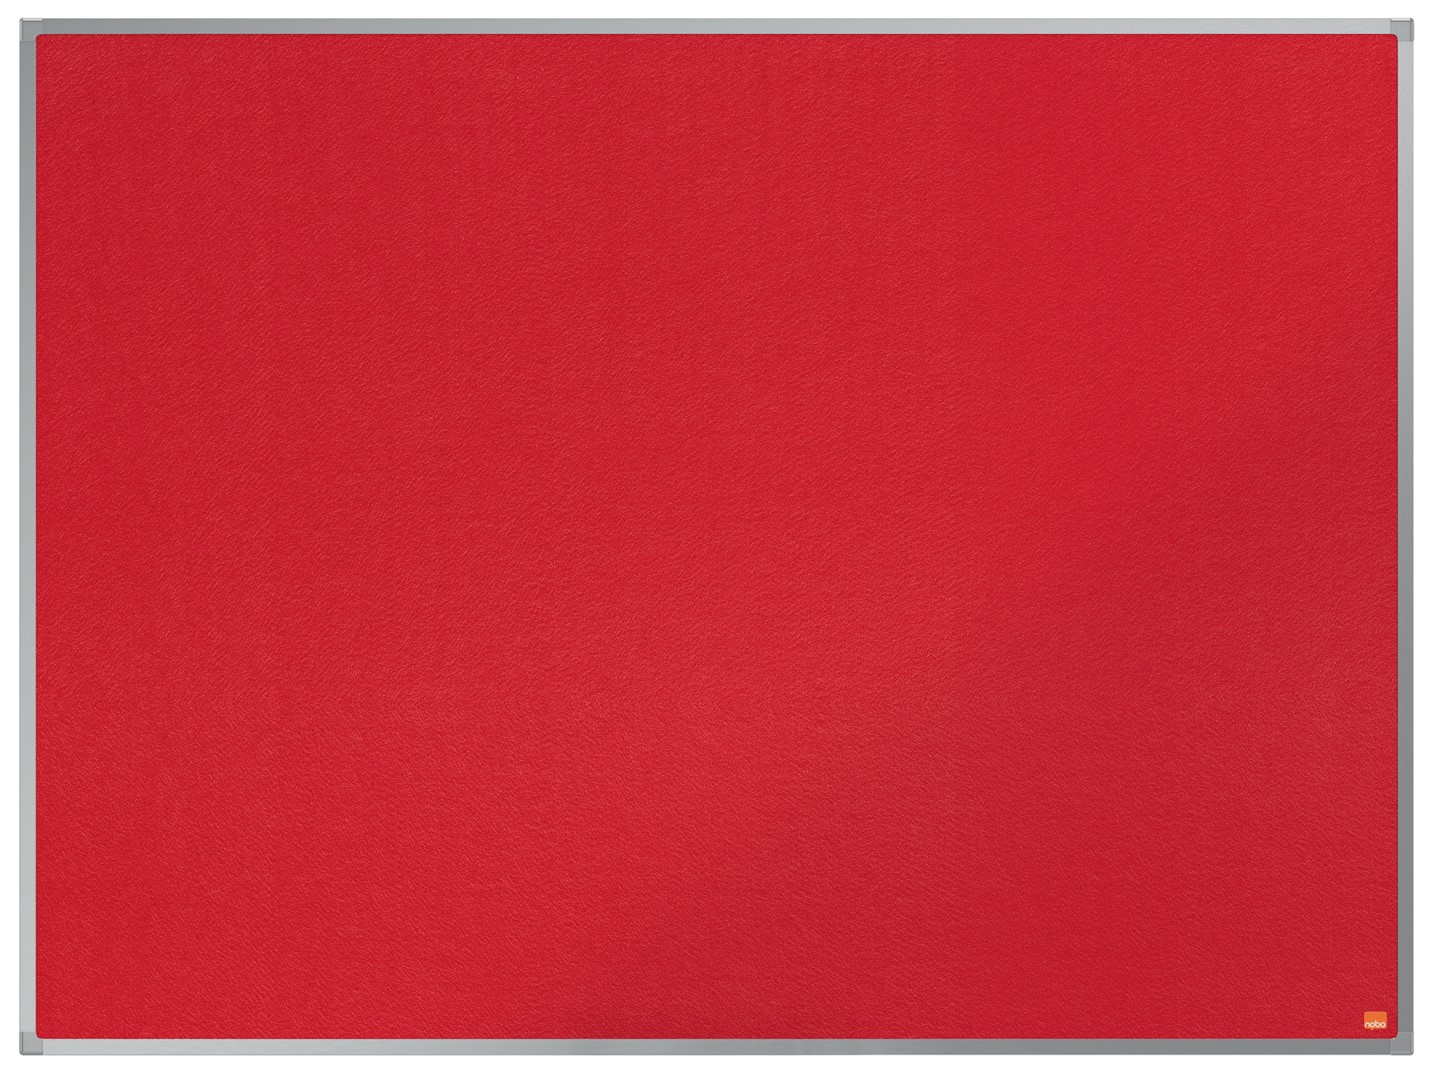 Tablica ogłoszeniowa filcowa Nobo Essence 1200x900mm, czerwona